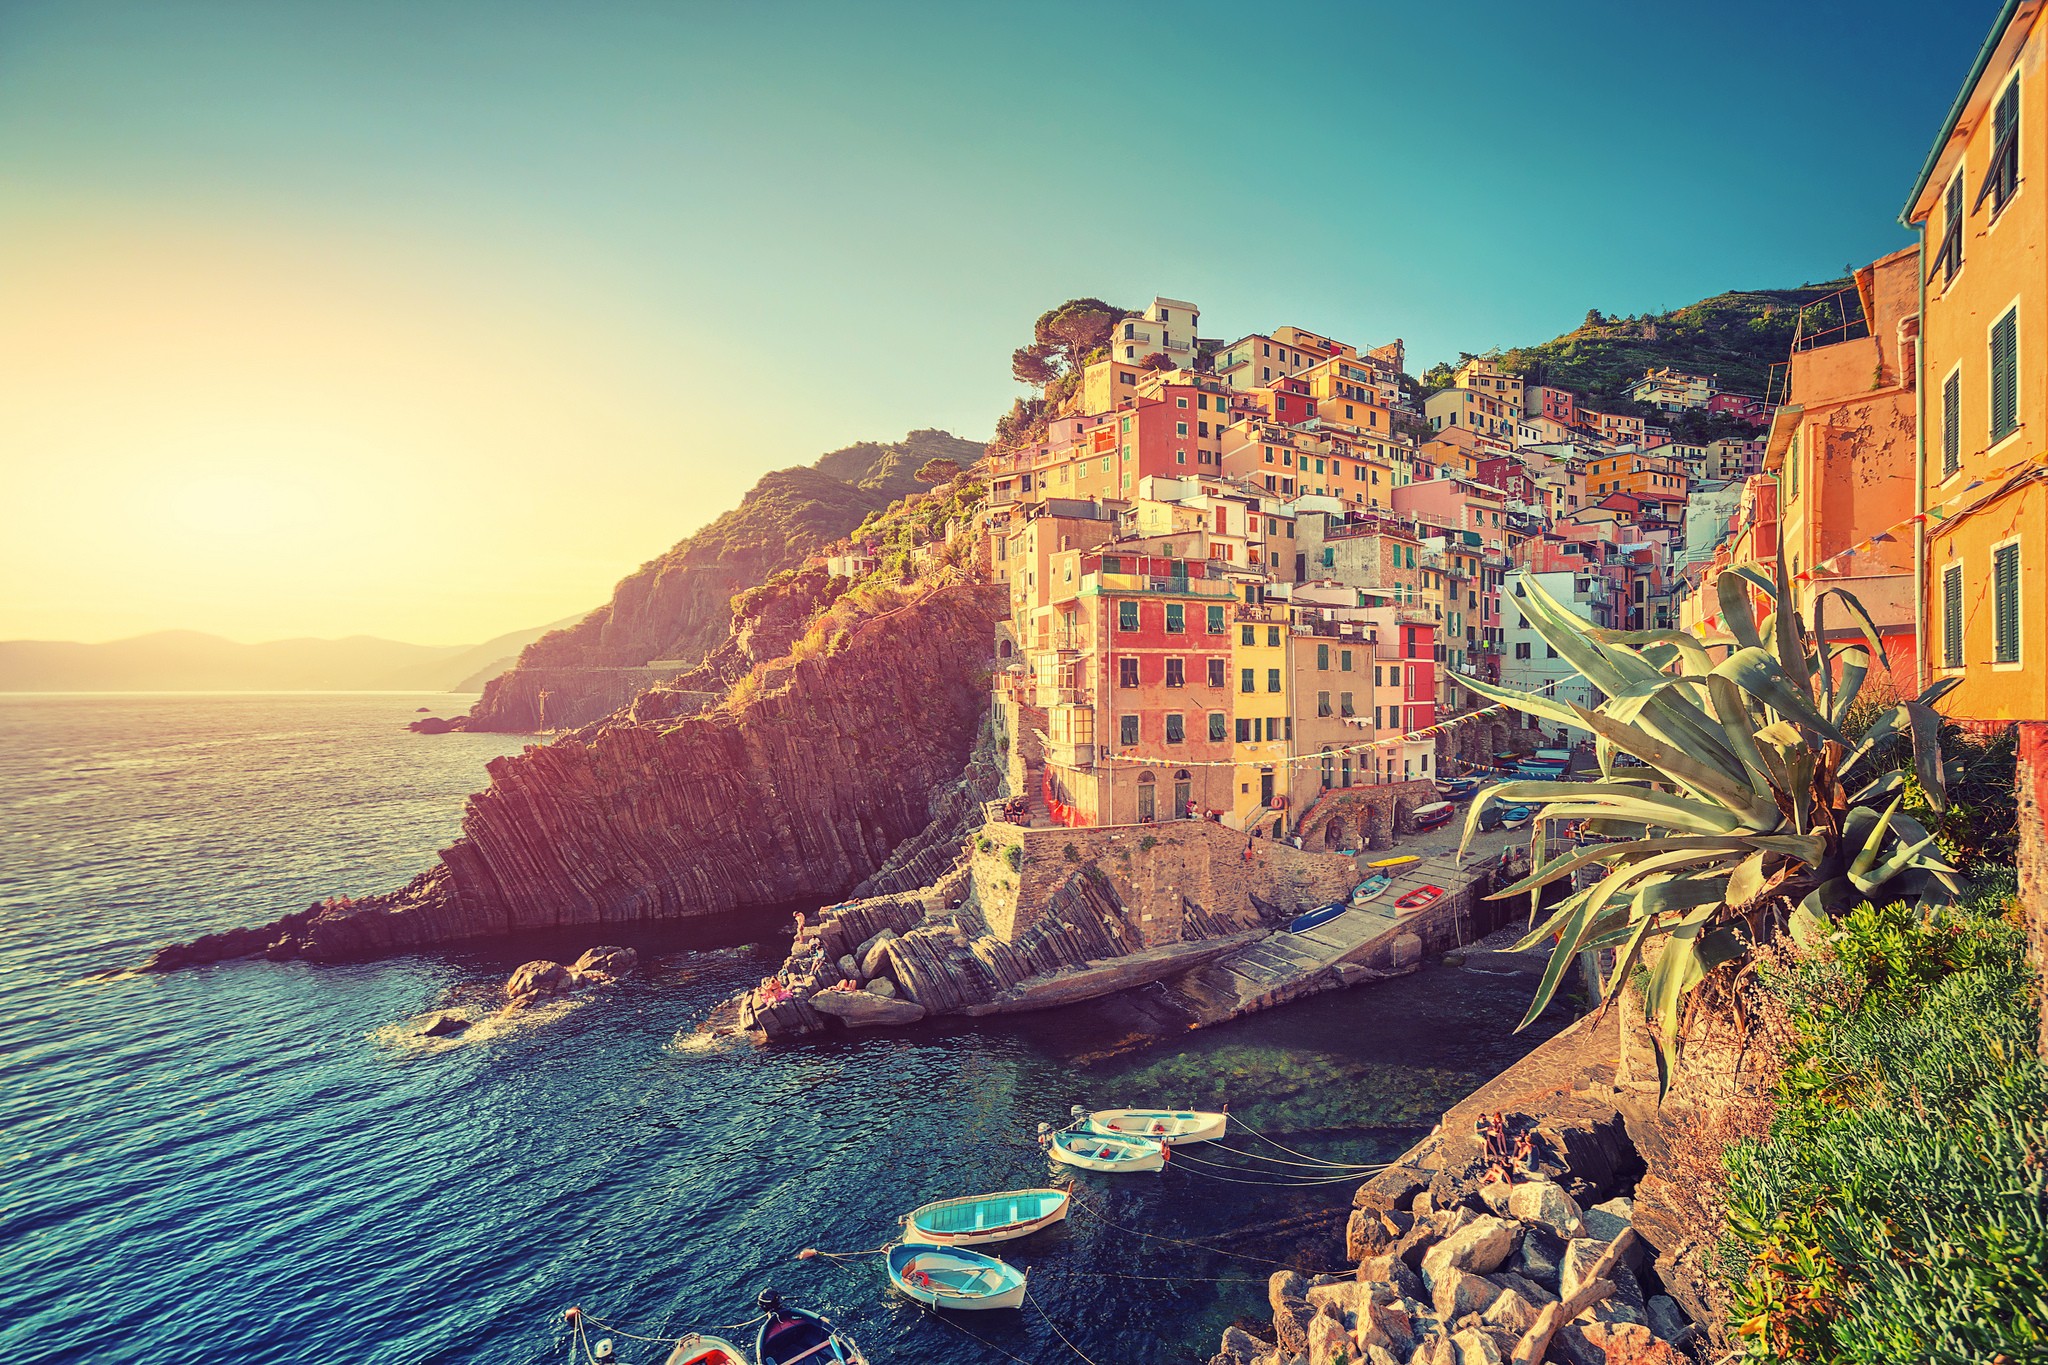 #cityscape, #landscape, #boat, #Italy, #sea, #Cinque Terre